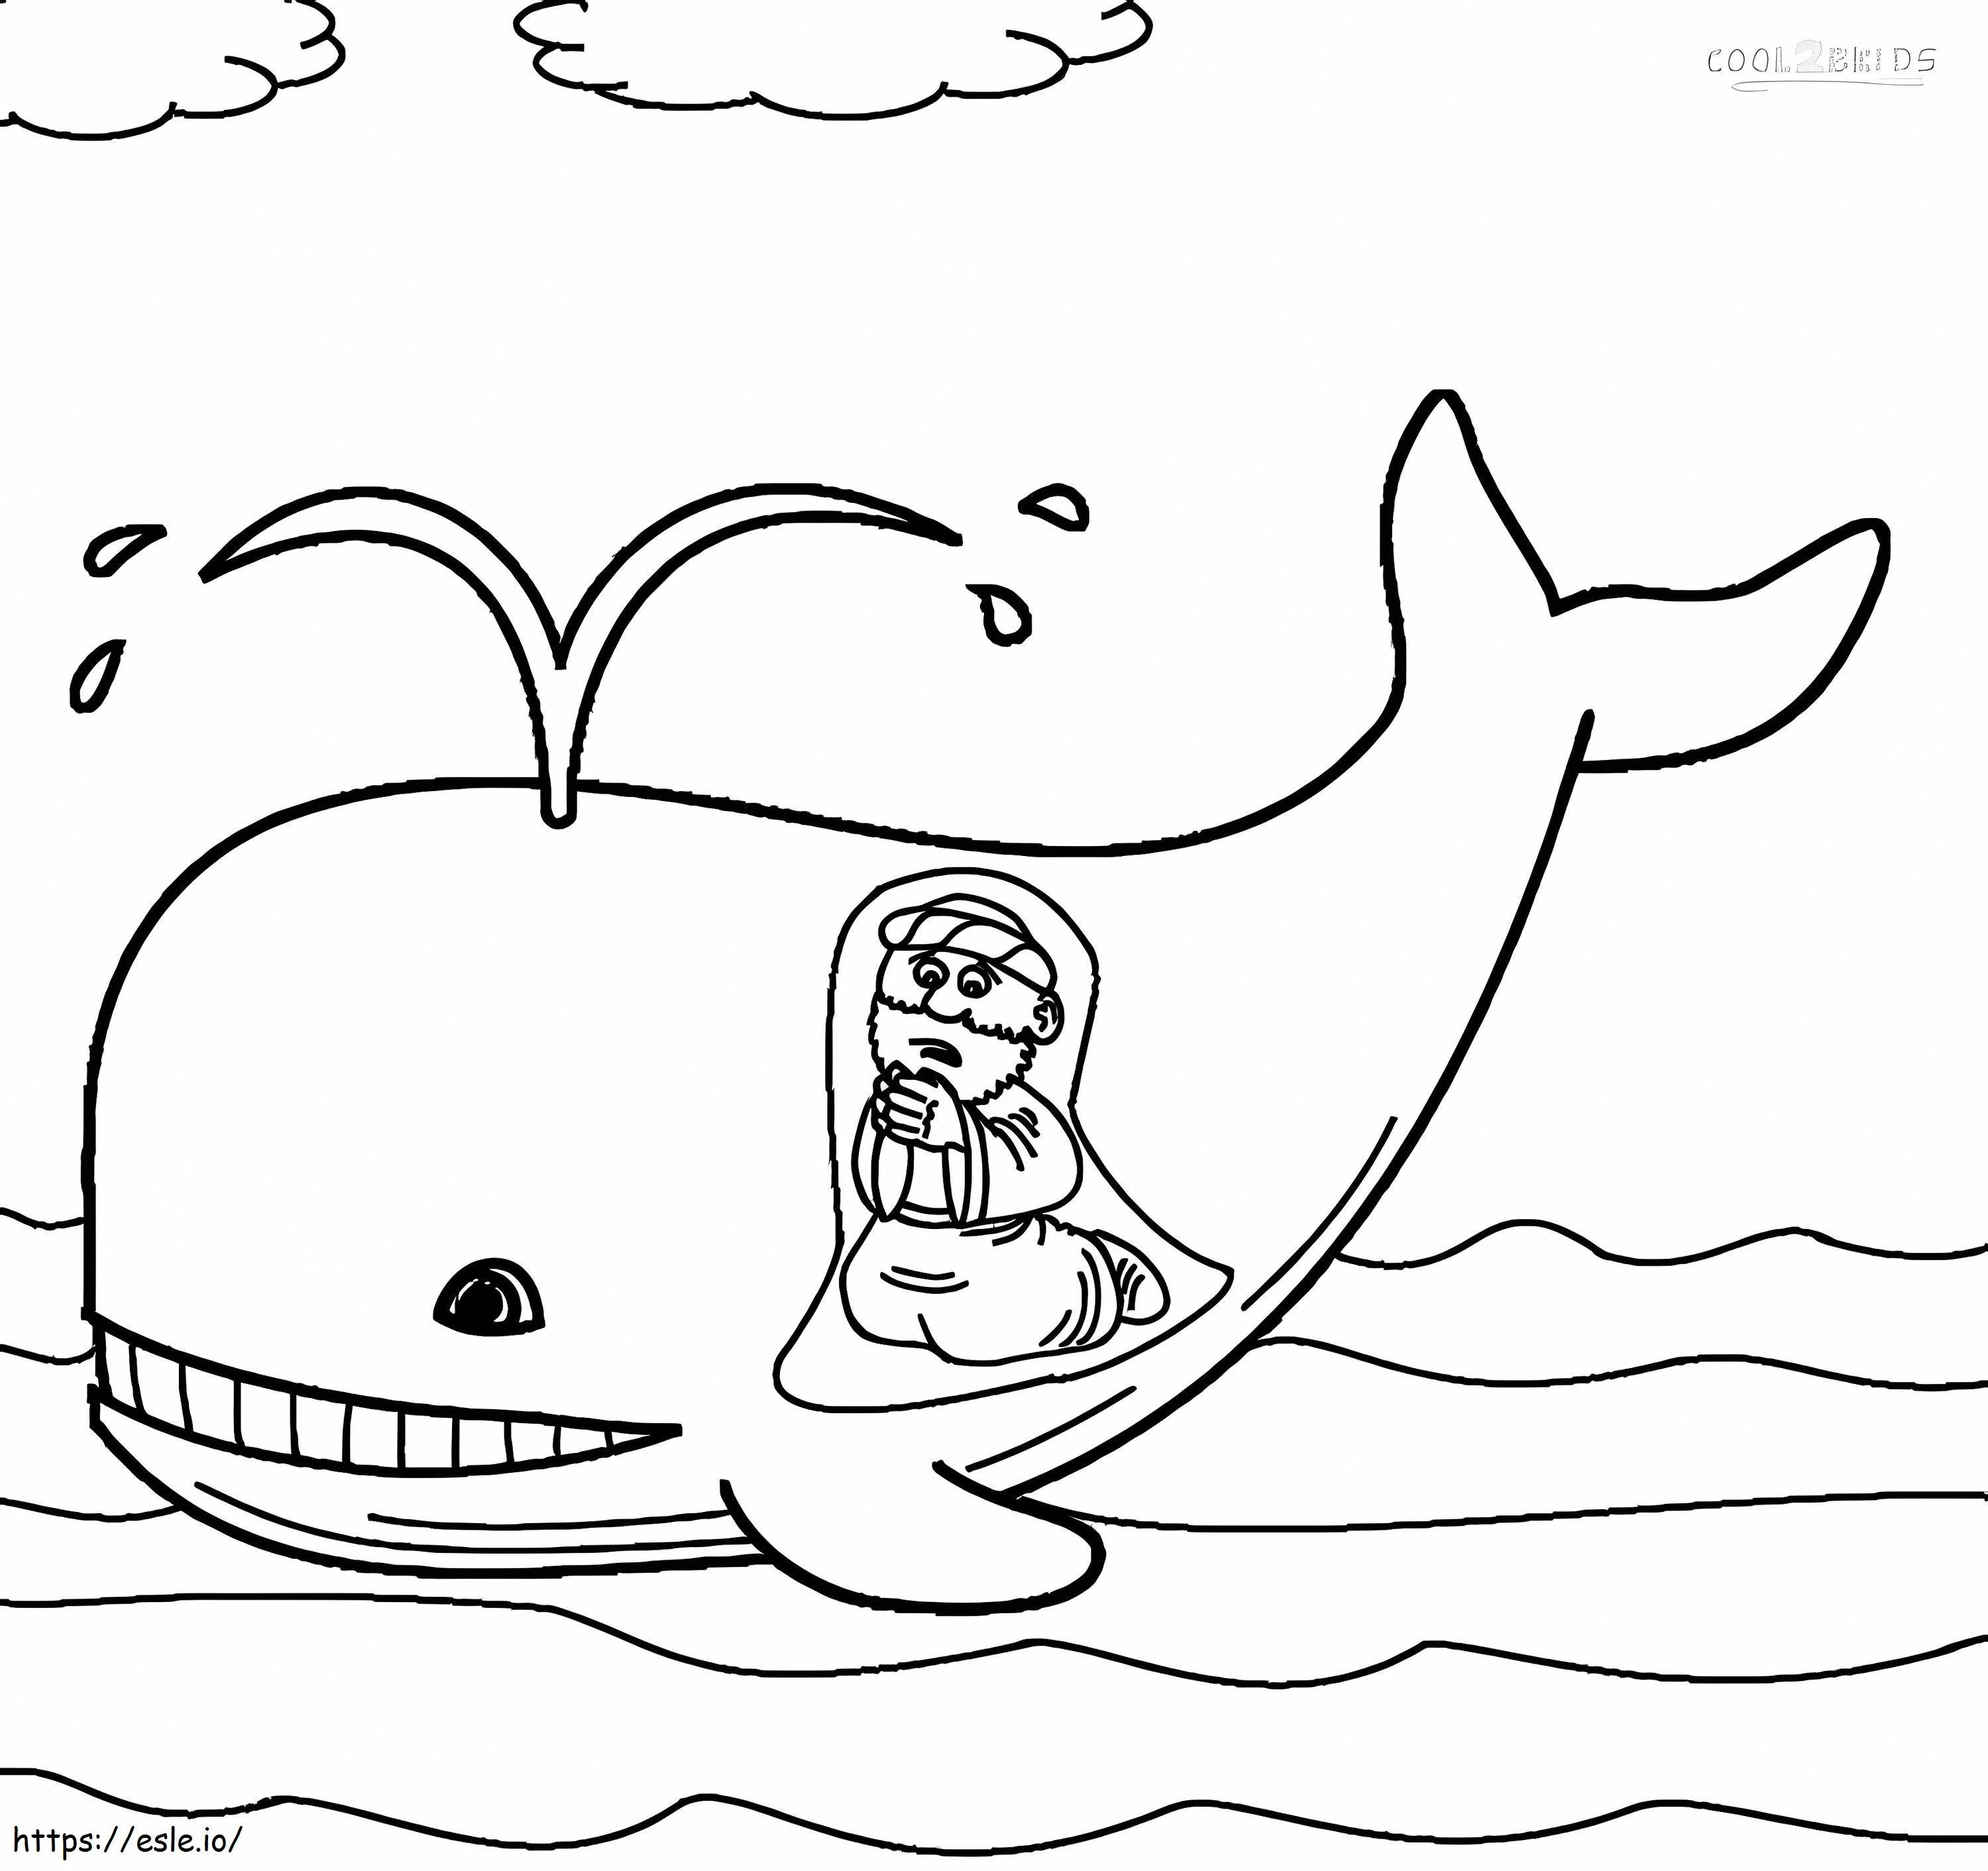 Jonas nella pancia di una balena da colorare